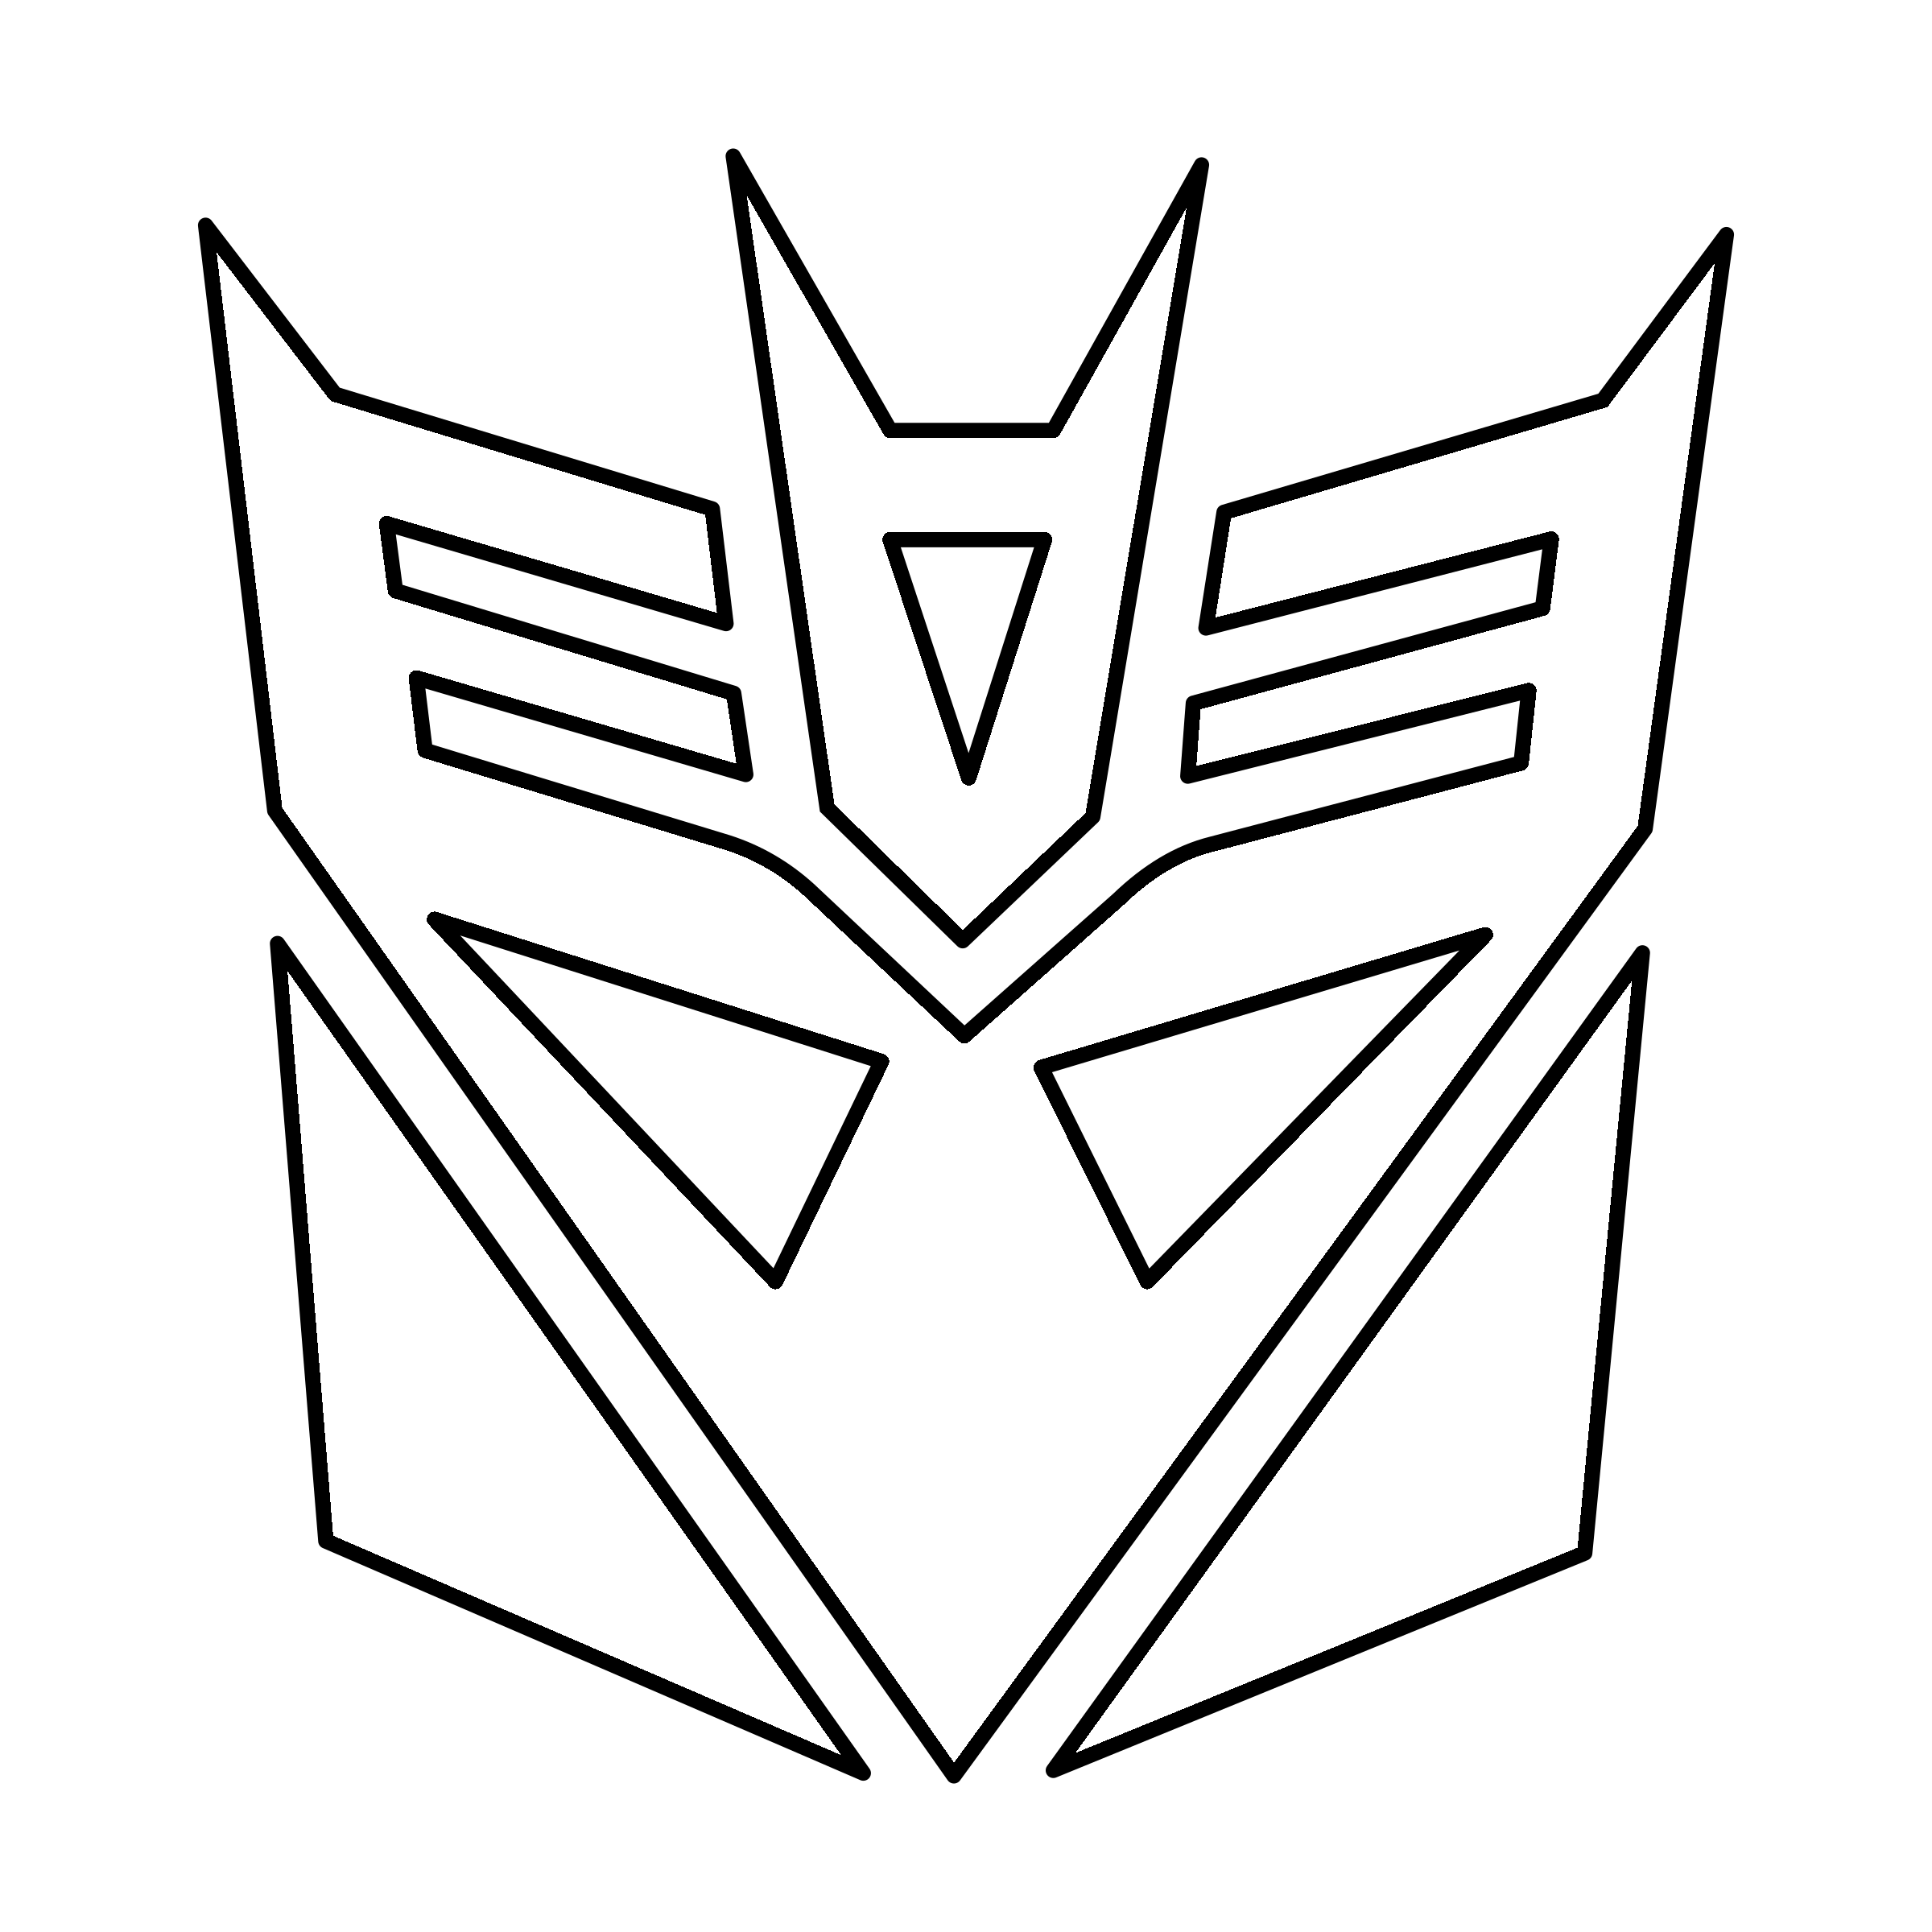 Decepticon Logo - Transformers Decepticon Logo PNG Transparent & SVG Vector - Freebie ...